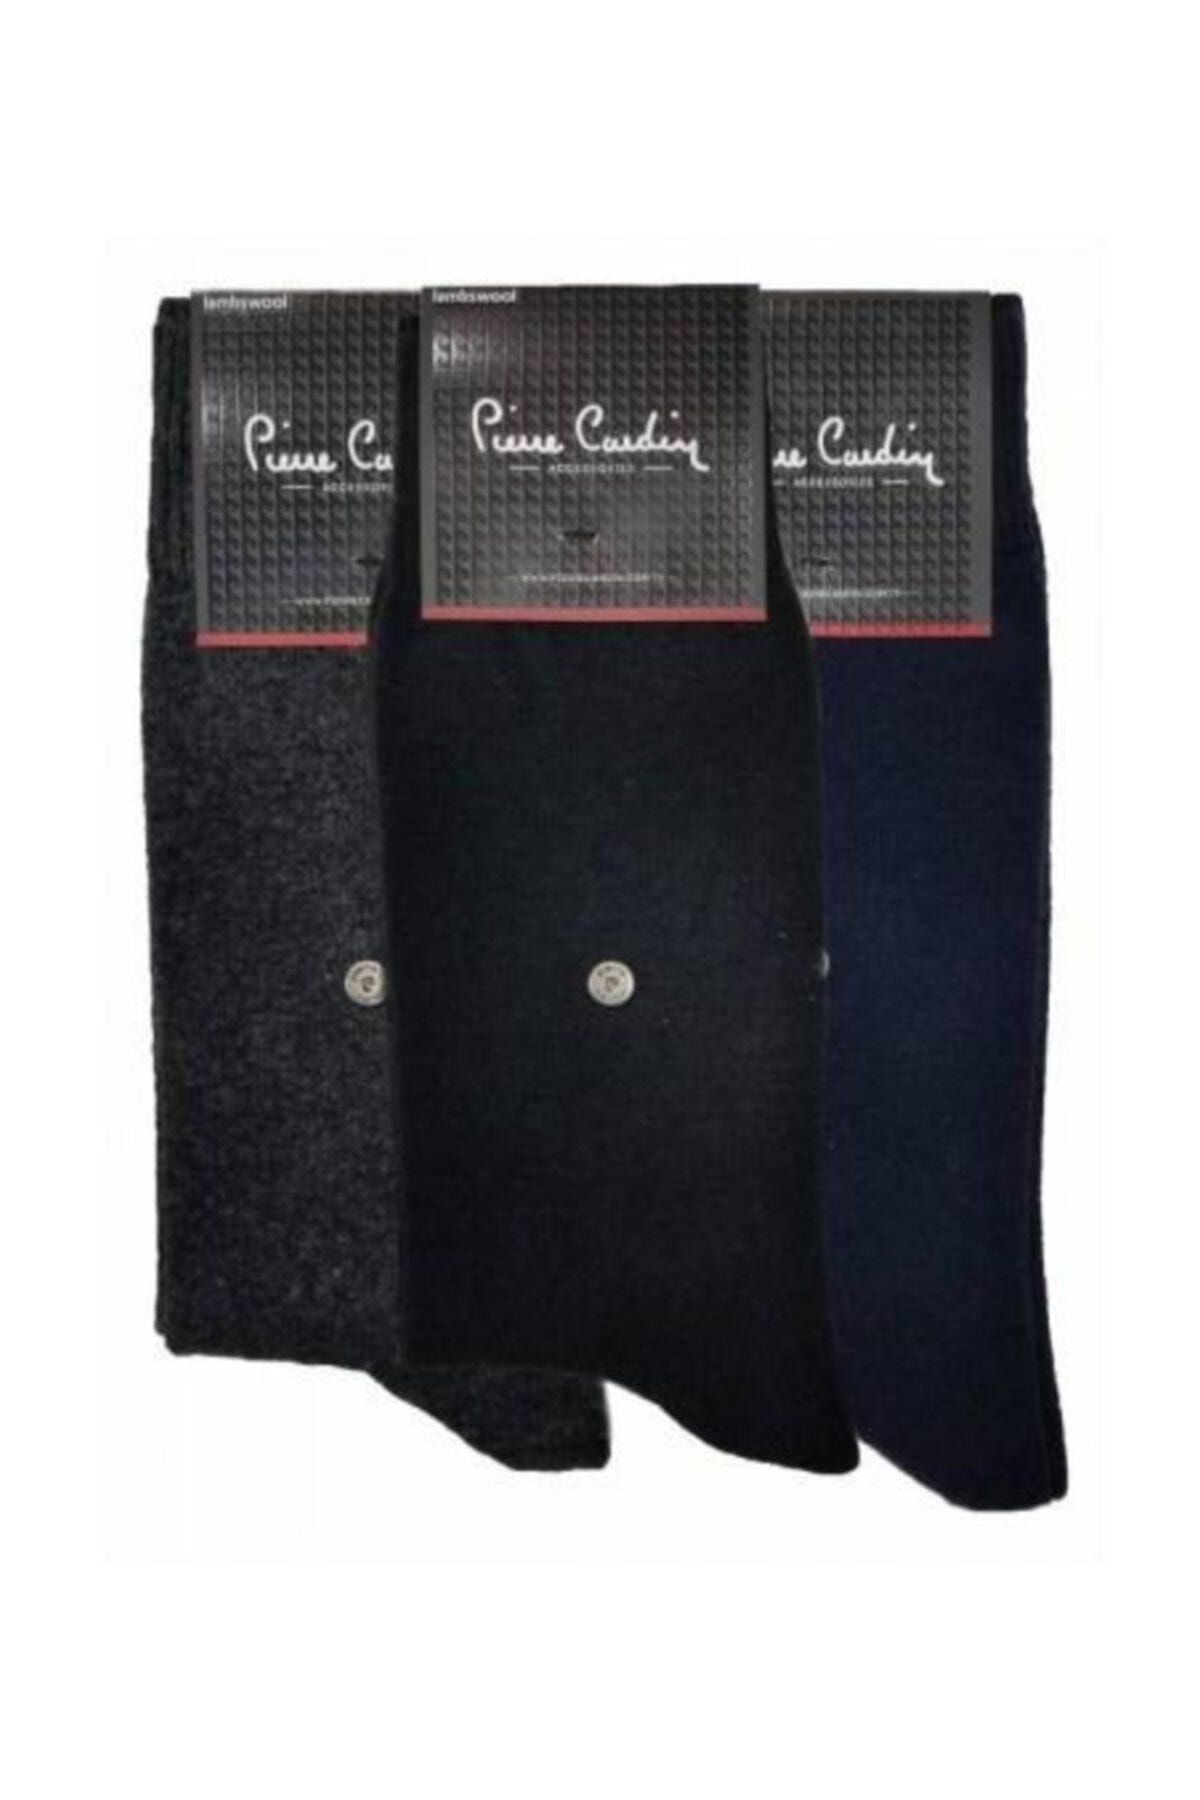 Pierre Cardin Yün Kışlık Erkek Çorap 3'lü Karışık Renk